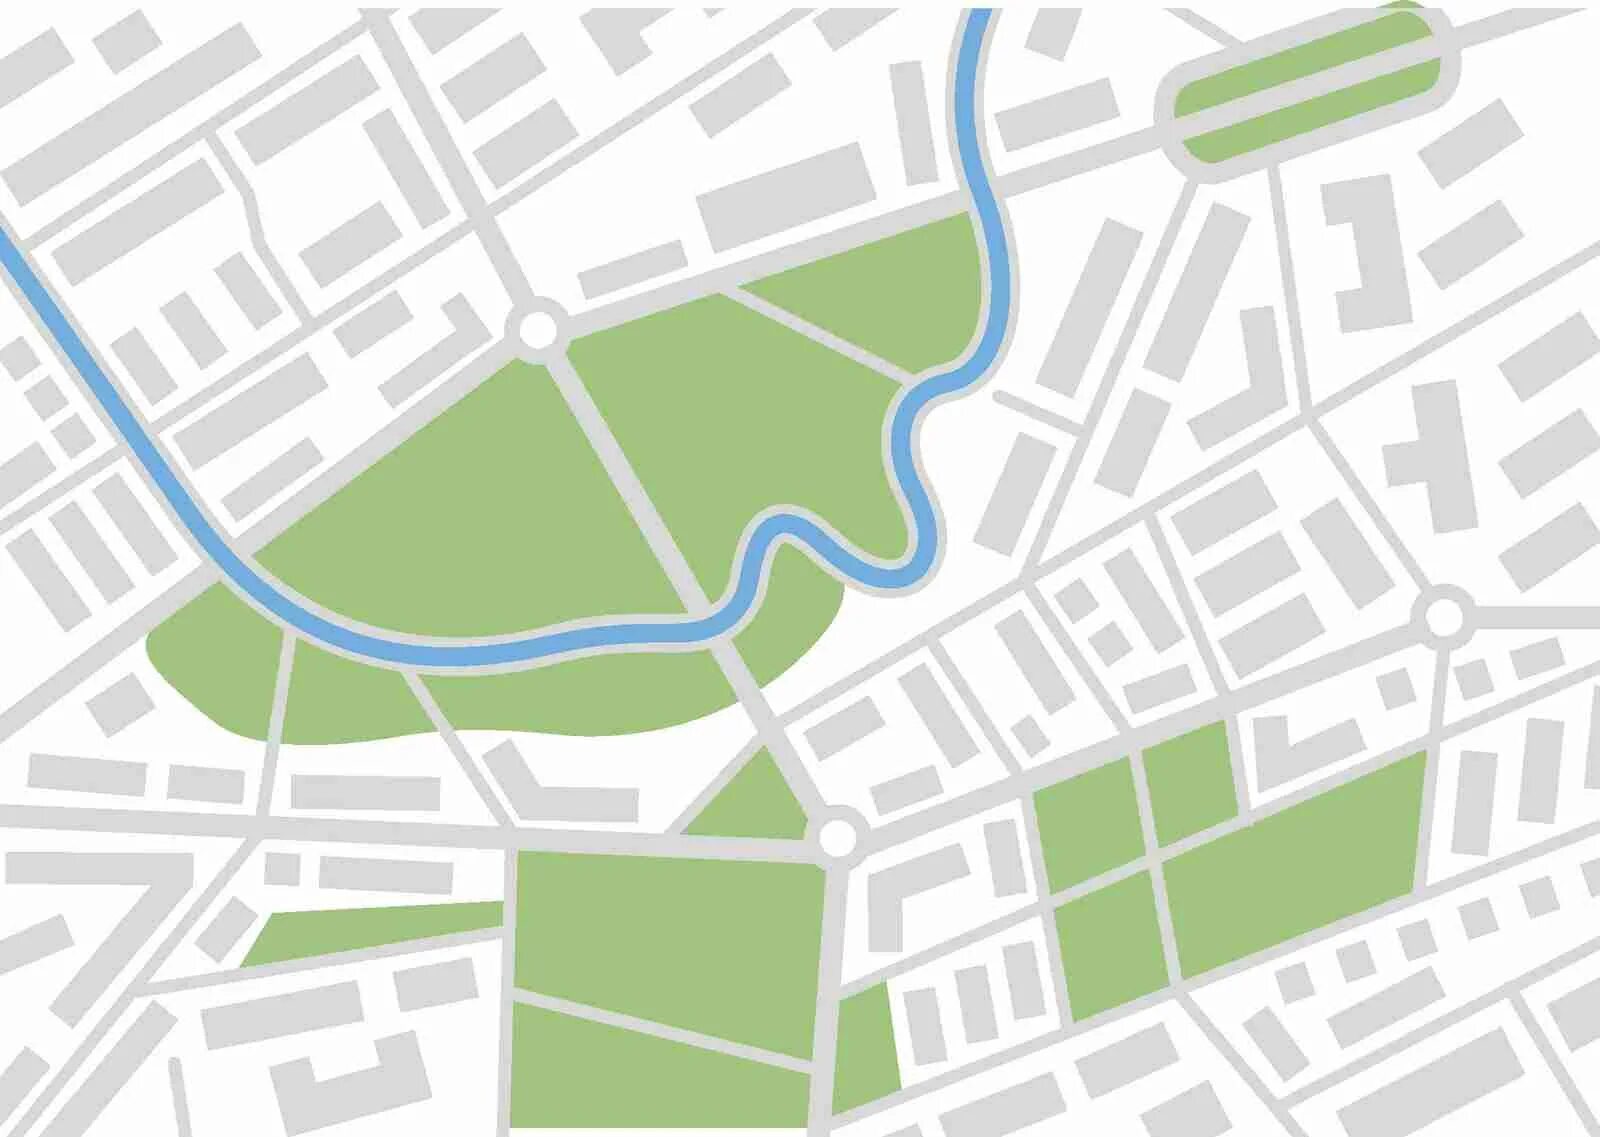 Small map. Векторная карта улиц. Карта улиц вектор. Изображение улиц на картах. Карта город уилцы вектор.